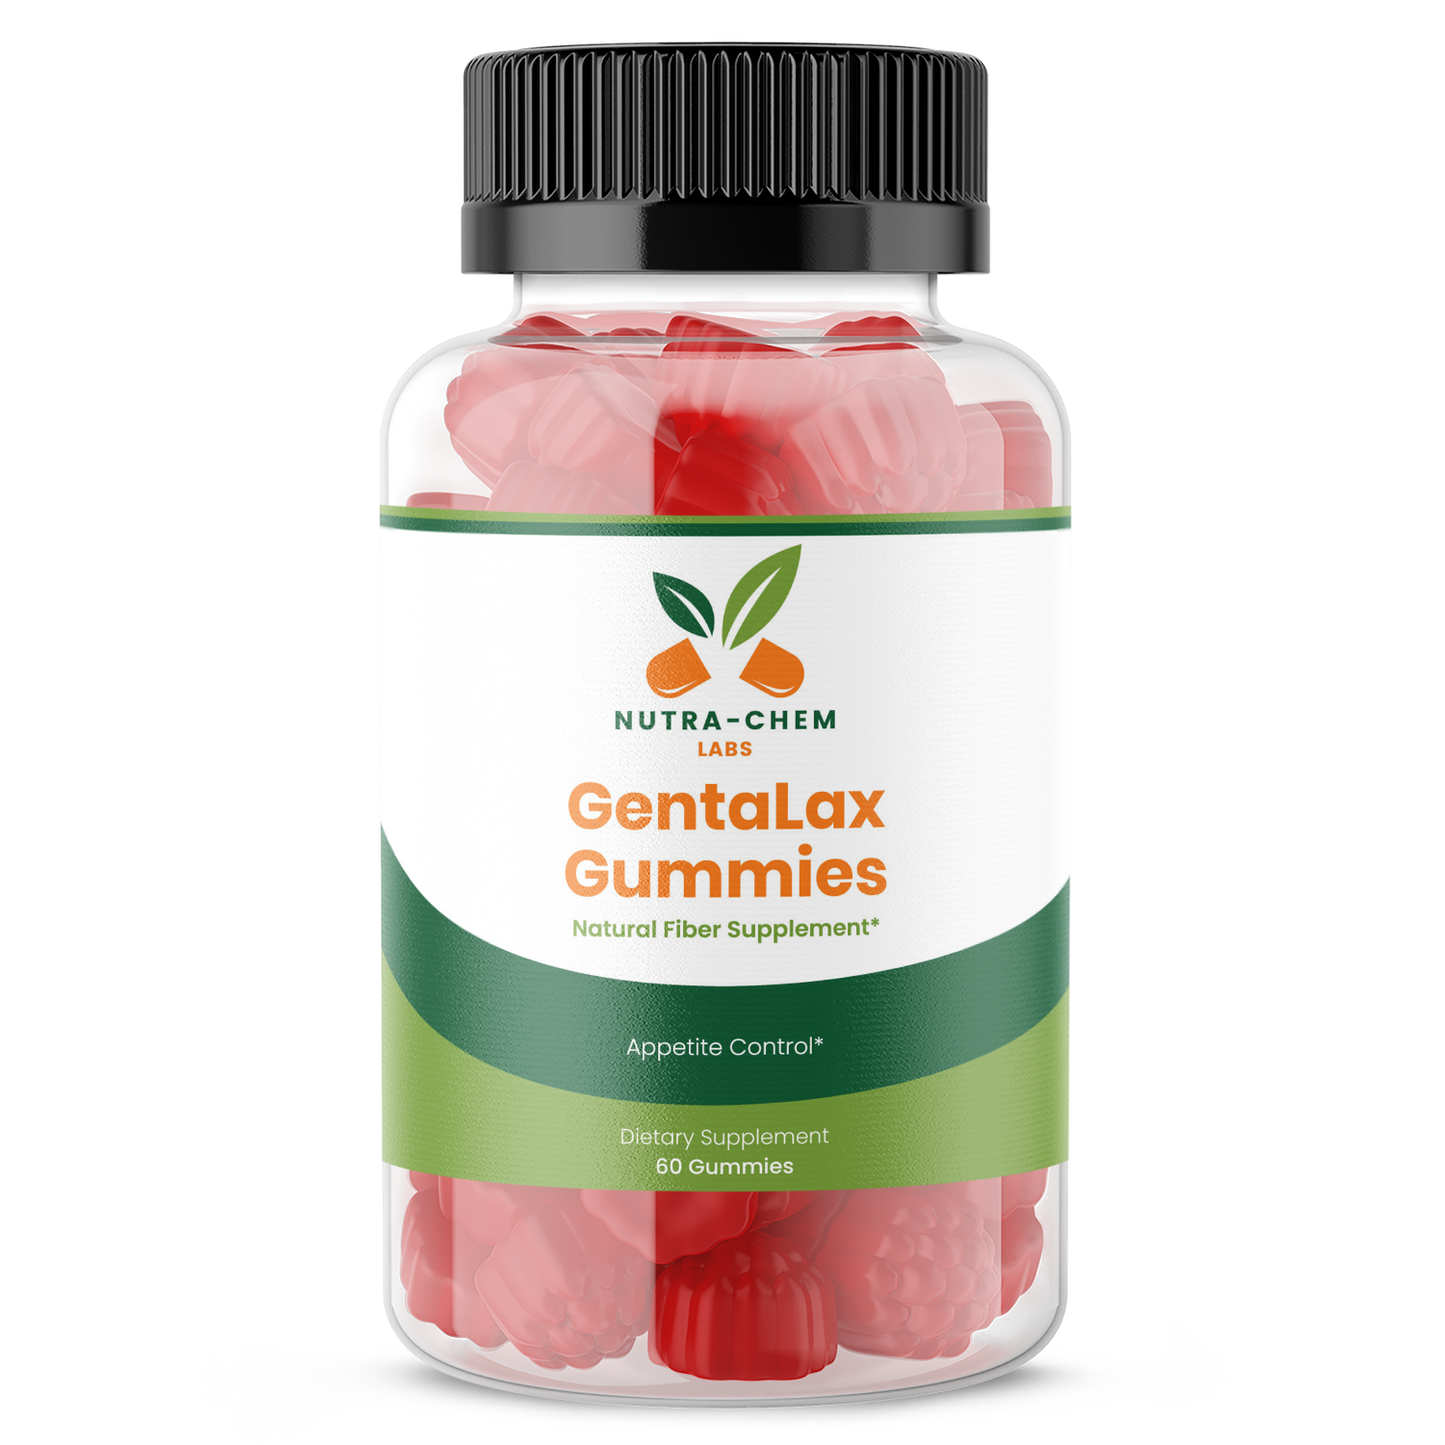 GentaLax Gummies